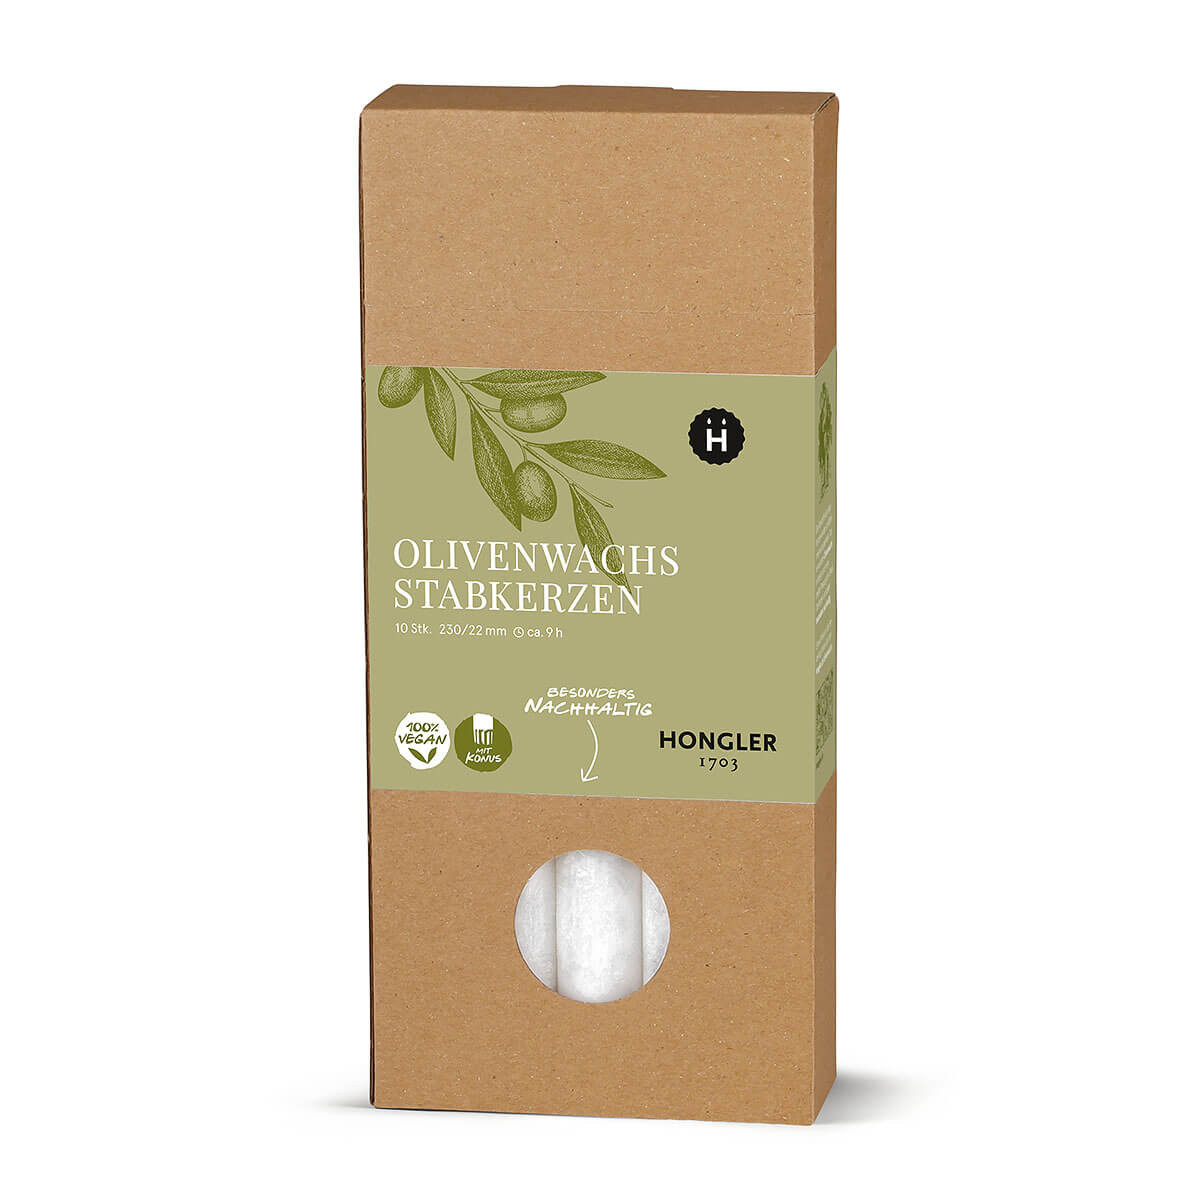 Stabkerzen aus Olivenwachs  – kristallin – 230/22 mm – vegan